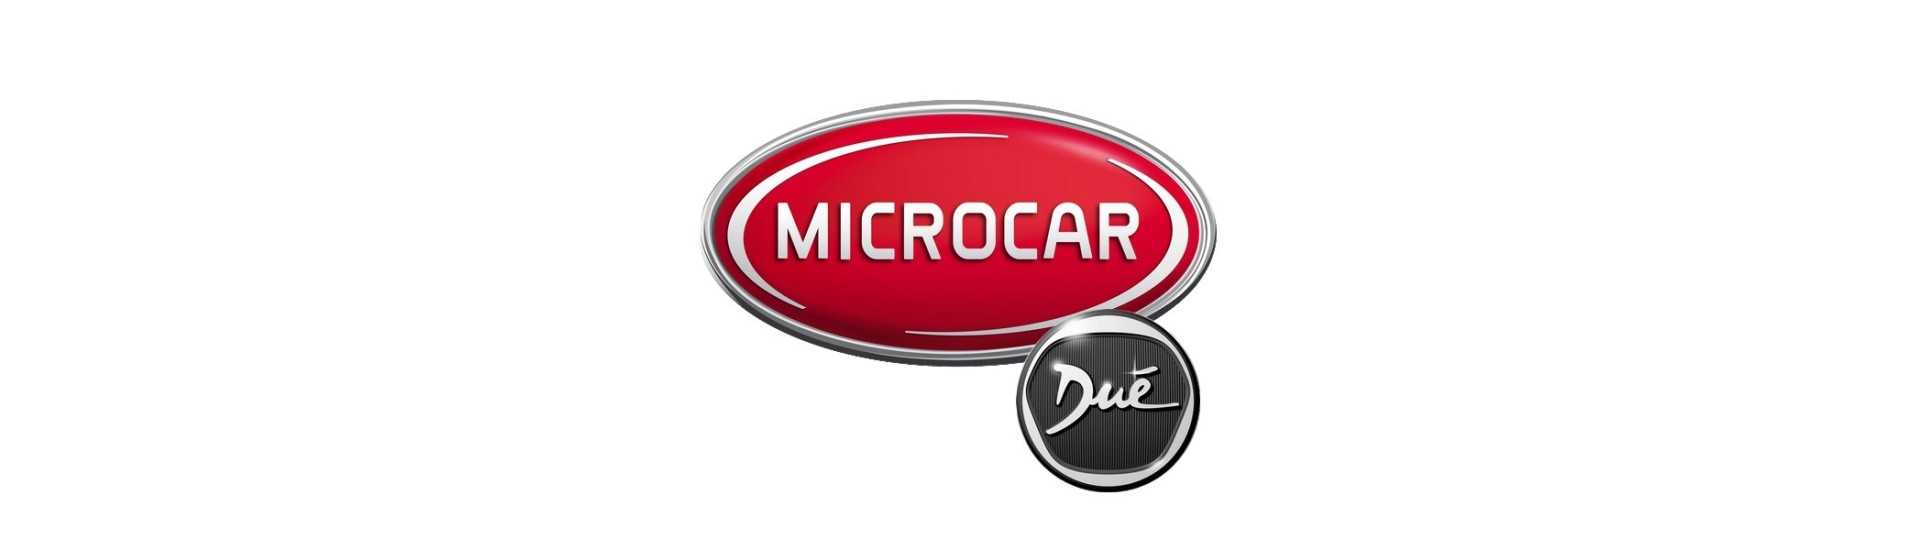 Furnizarea de carburant la cel mai bun preț fără permis Microcar Dué